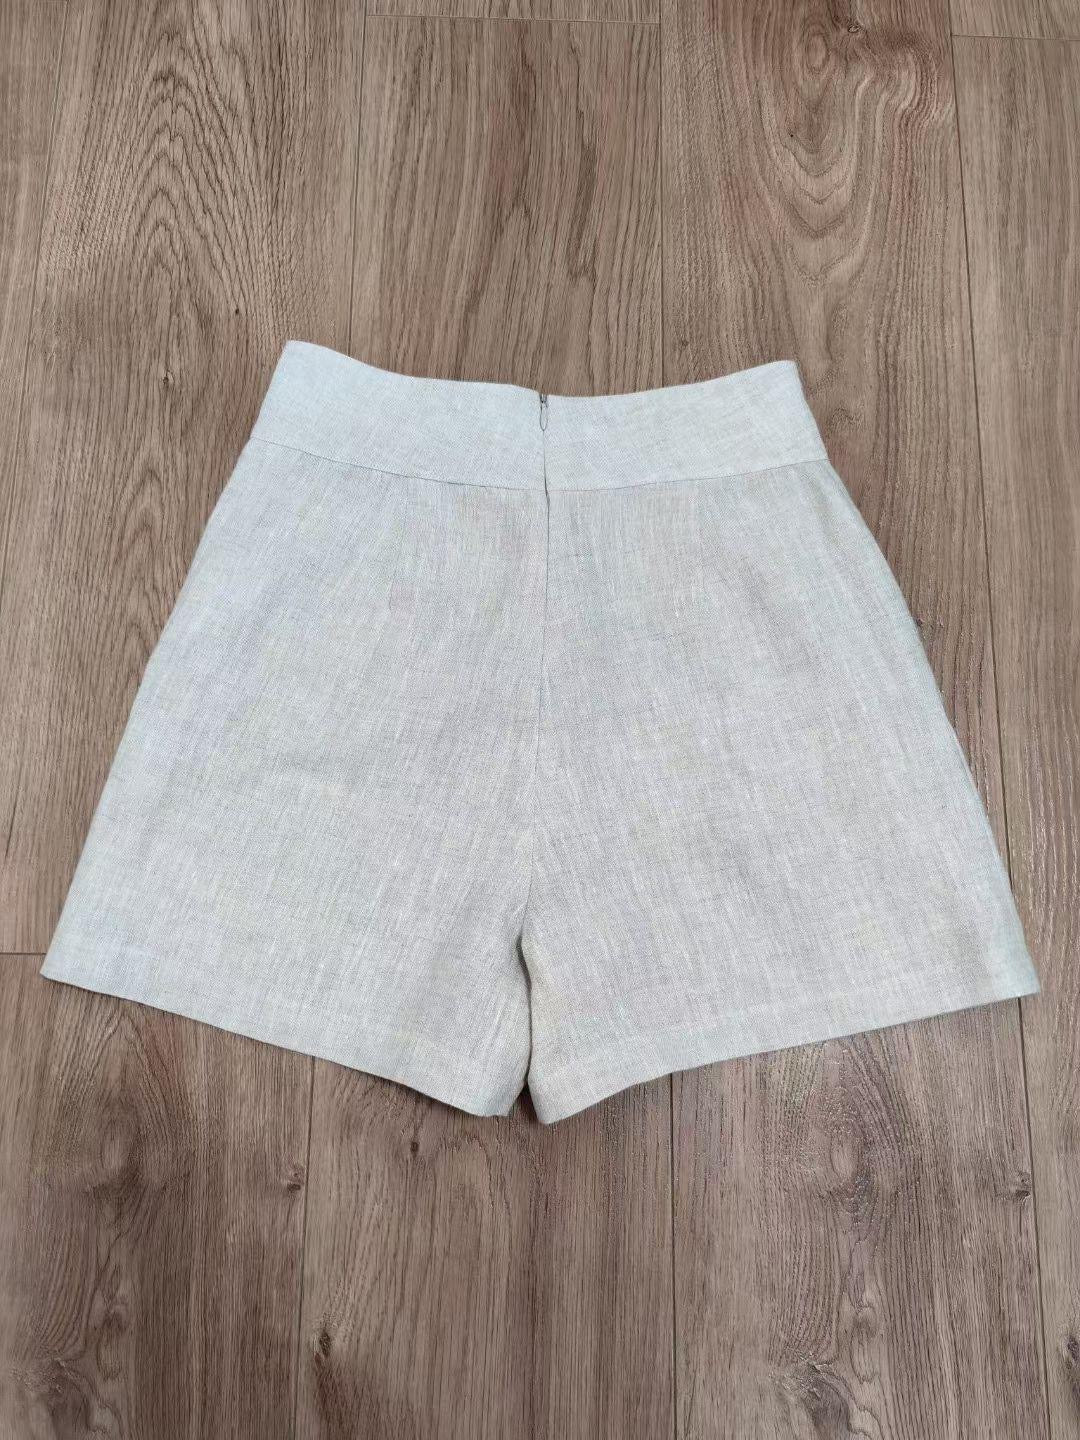 Ref Baylor Linen Shorts